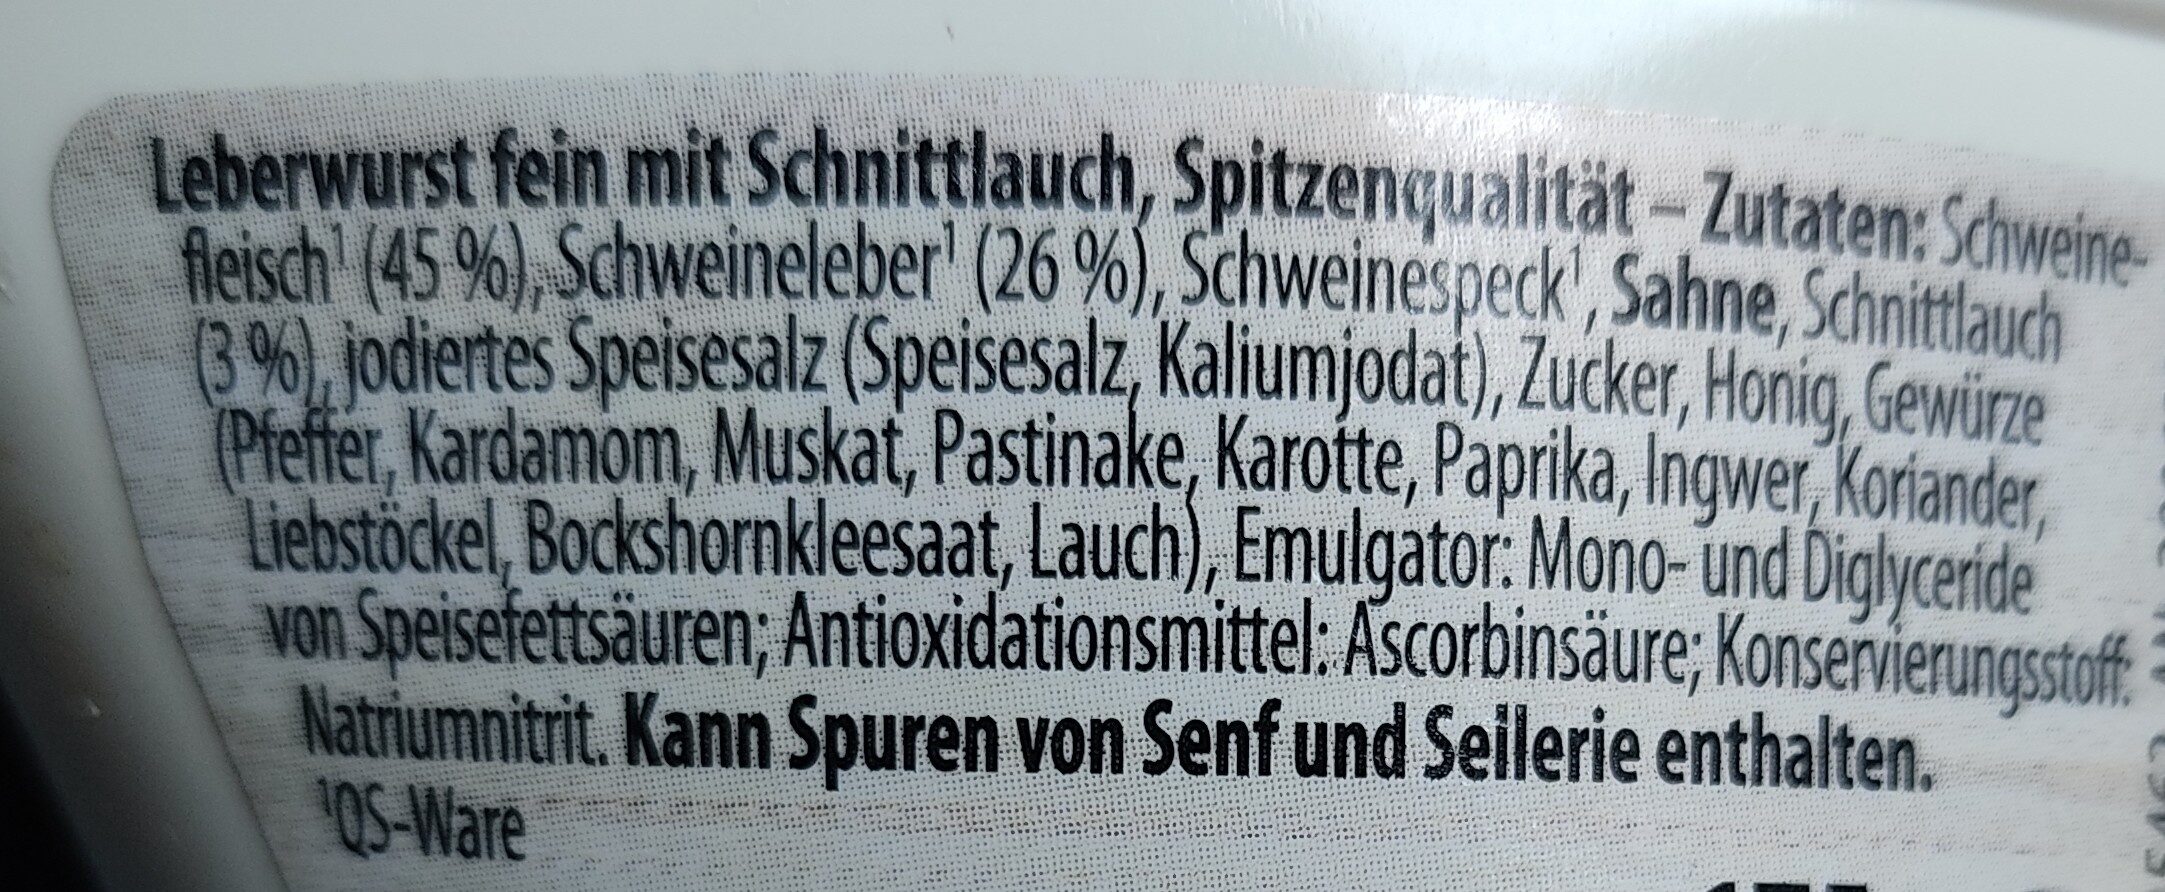 Leberwurst fein mit Schnittlauch - Ingrédients - de